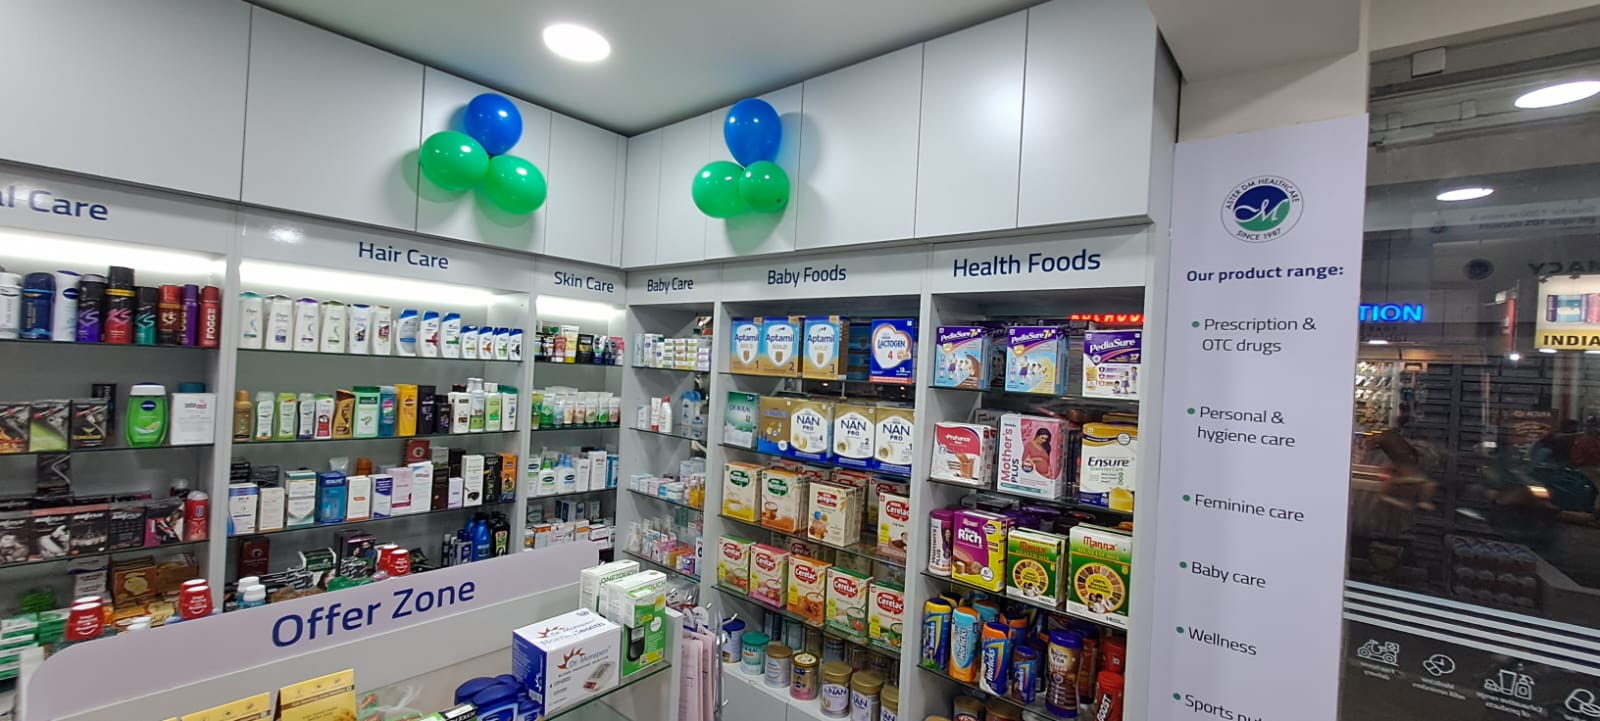 Aster Pharmacy in Ramanattukara, Calicut